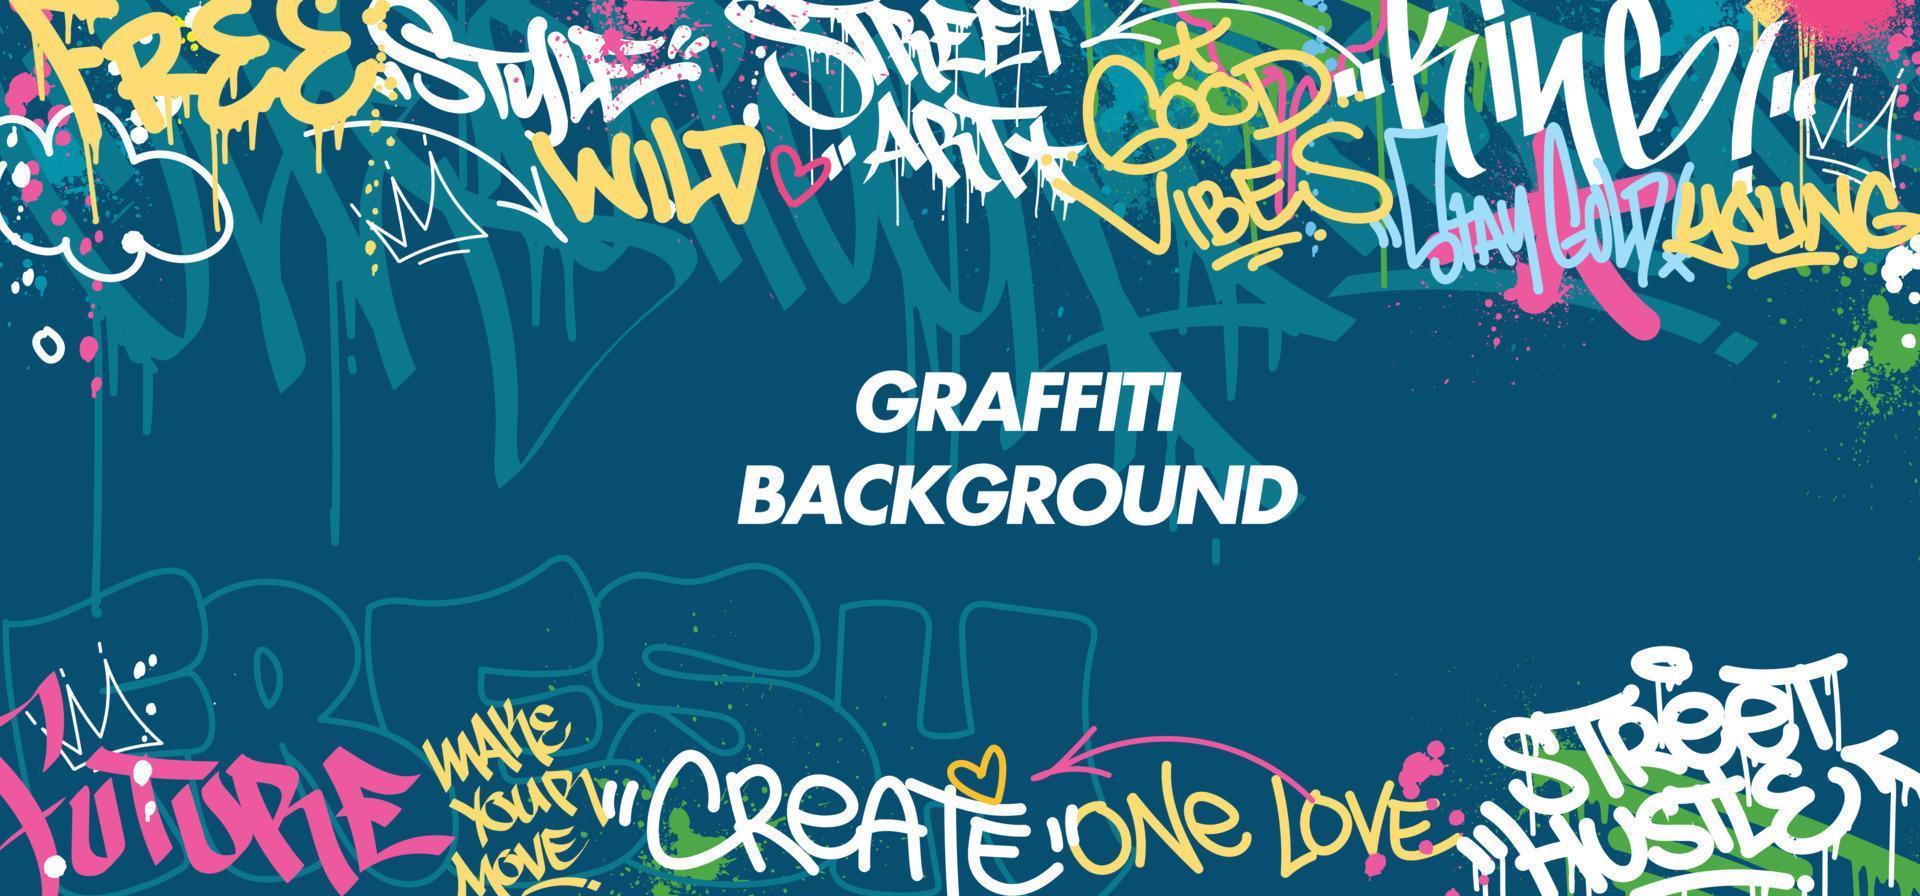 fundo colorido da arte da parede dos grafittis arte de rua hip-hop urbano ilustração vetorial fundo. fundo de arte graffiti incrível sem costura vetor